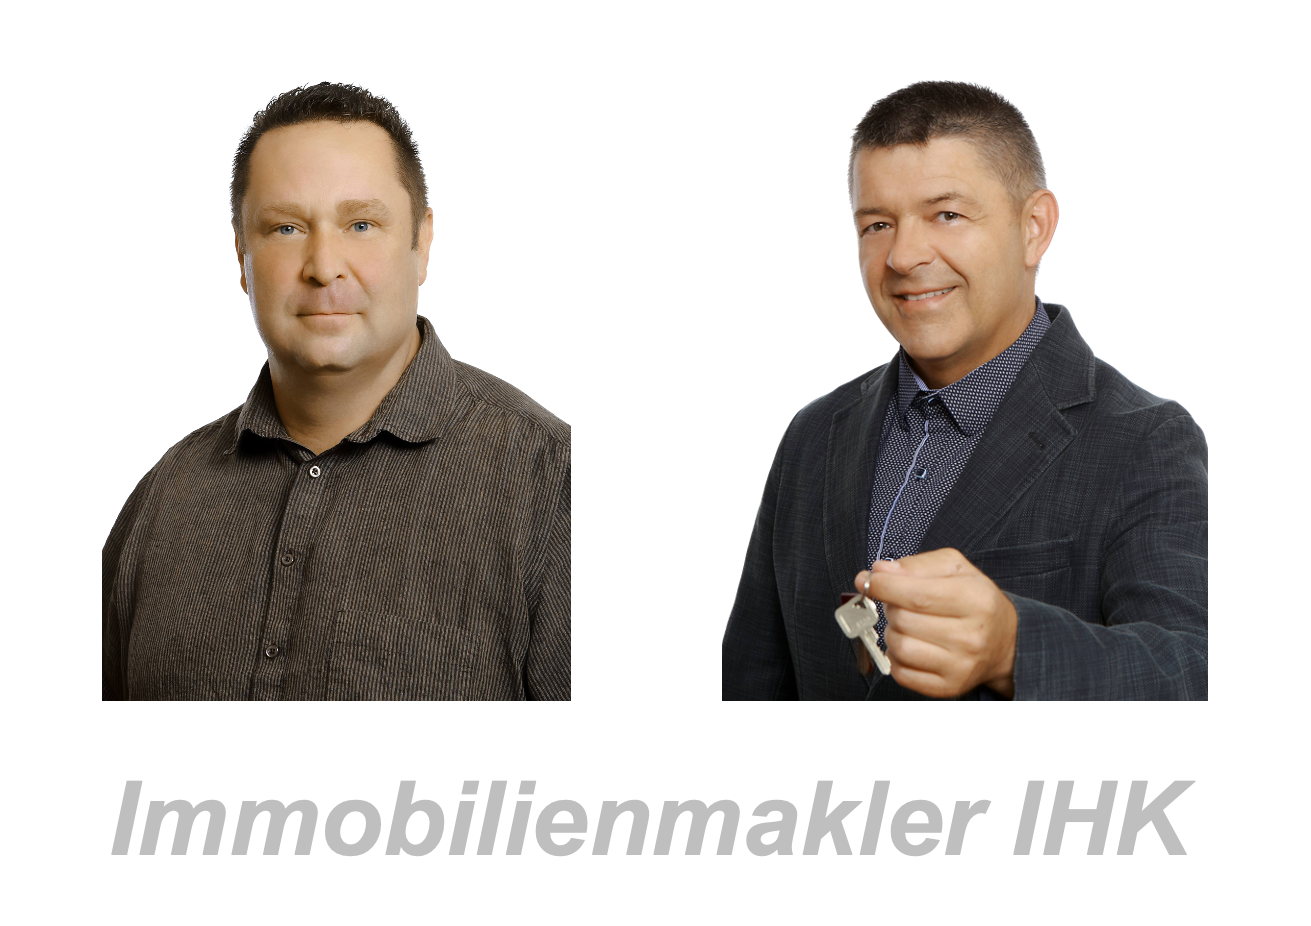 IHK zertifizierte Immobilienmakler in Schmalkalden Marco Hillmann und Markus Voß